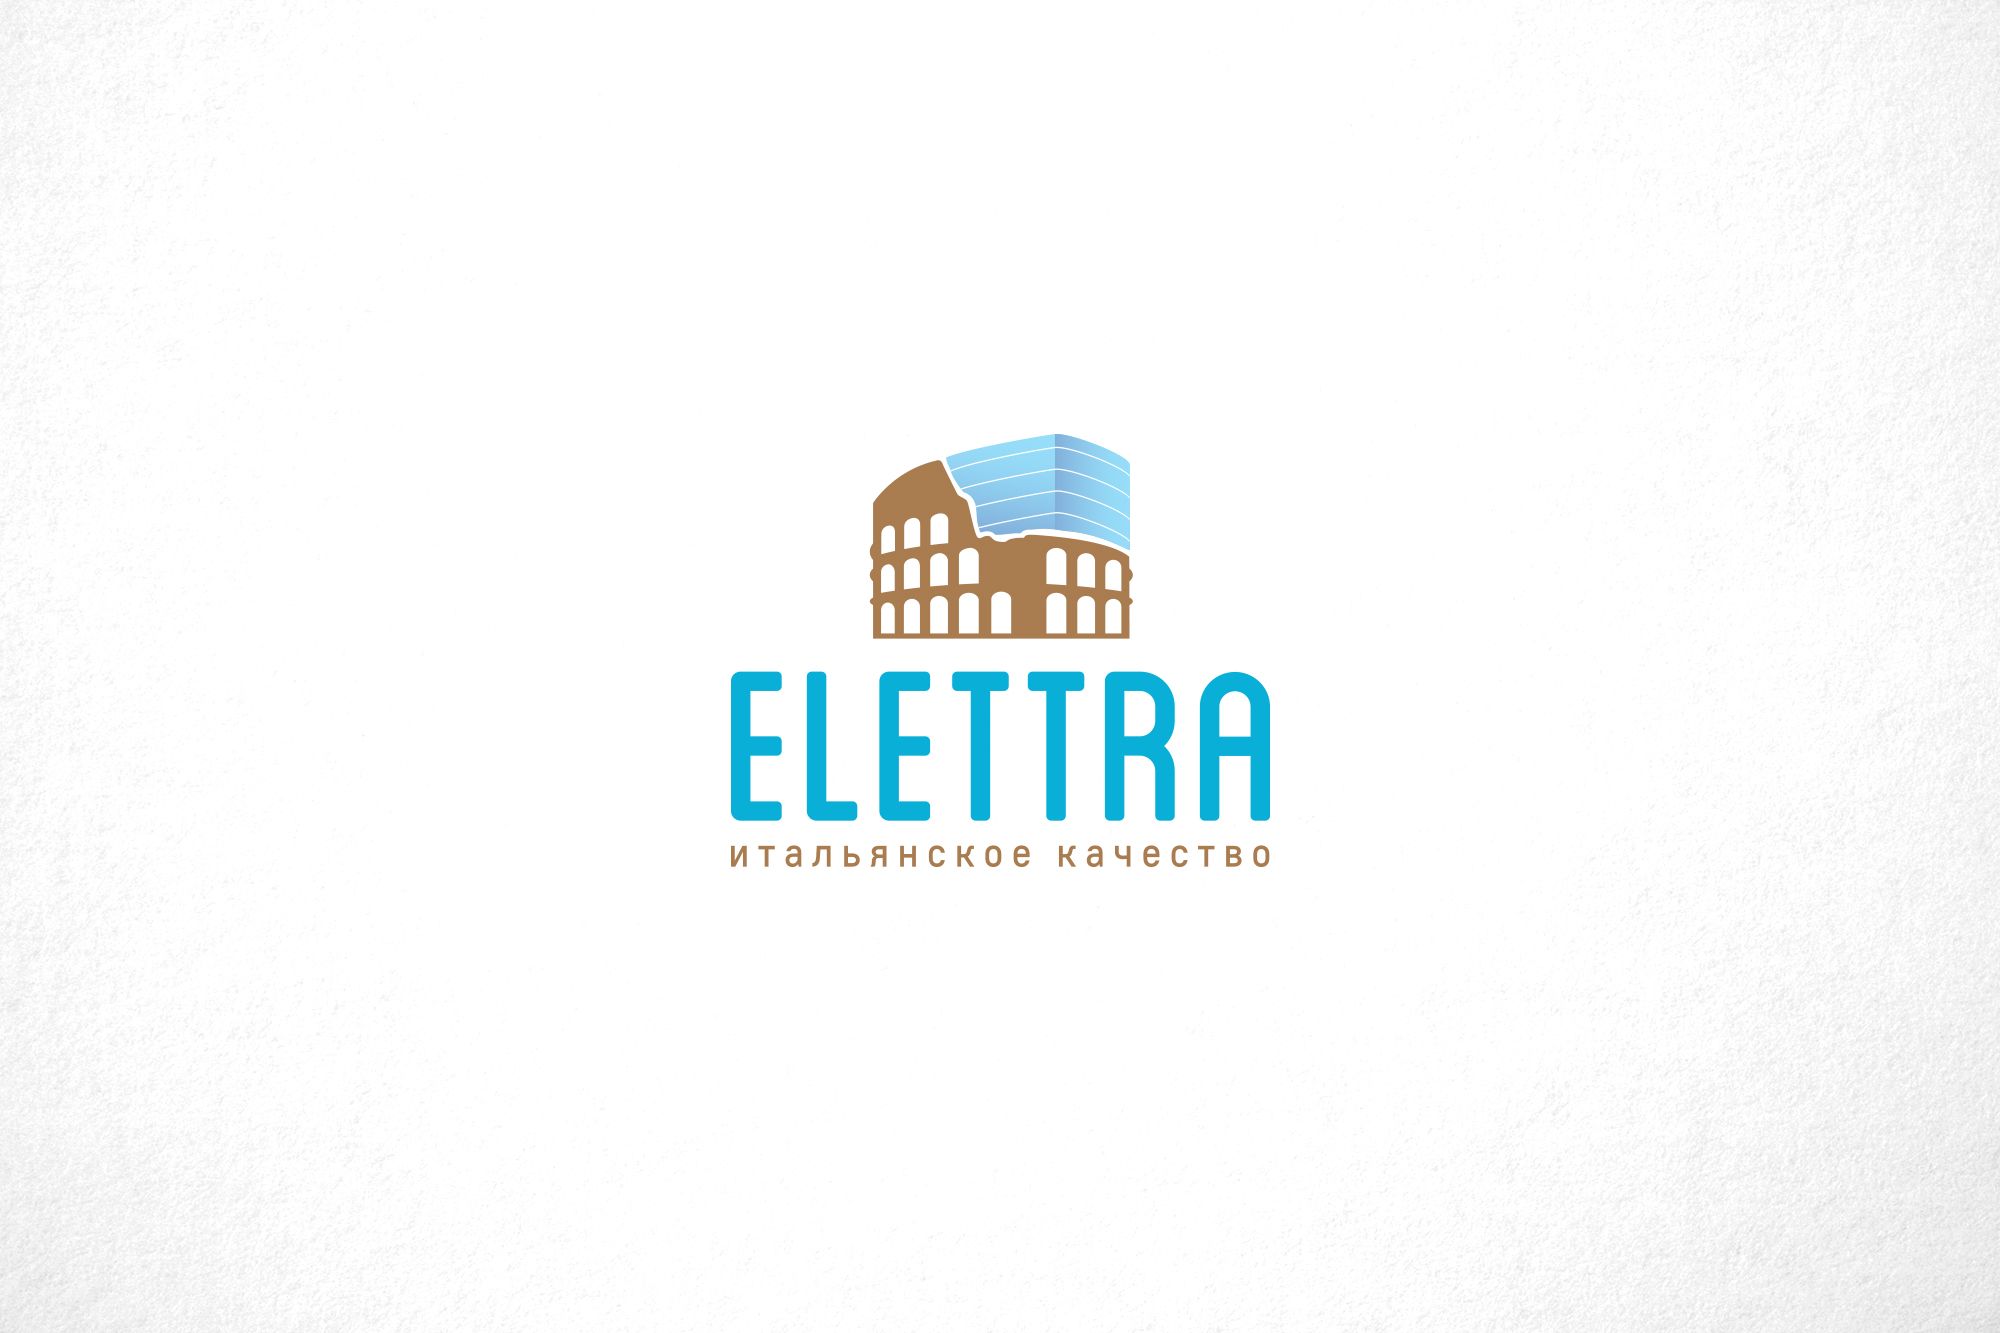 Логотип Elettra - стекольное производство - дизайнер funkielevis